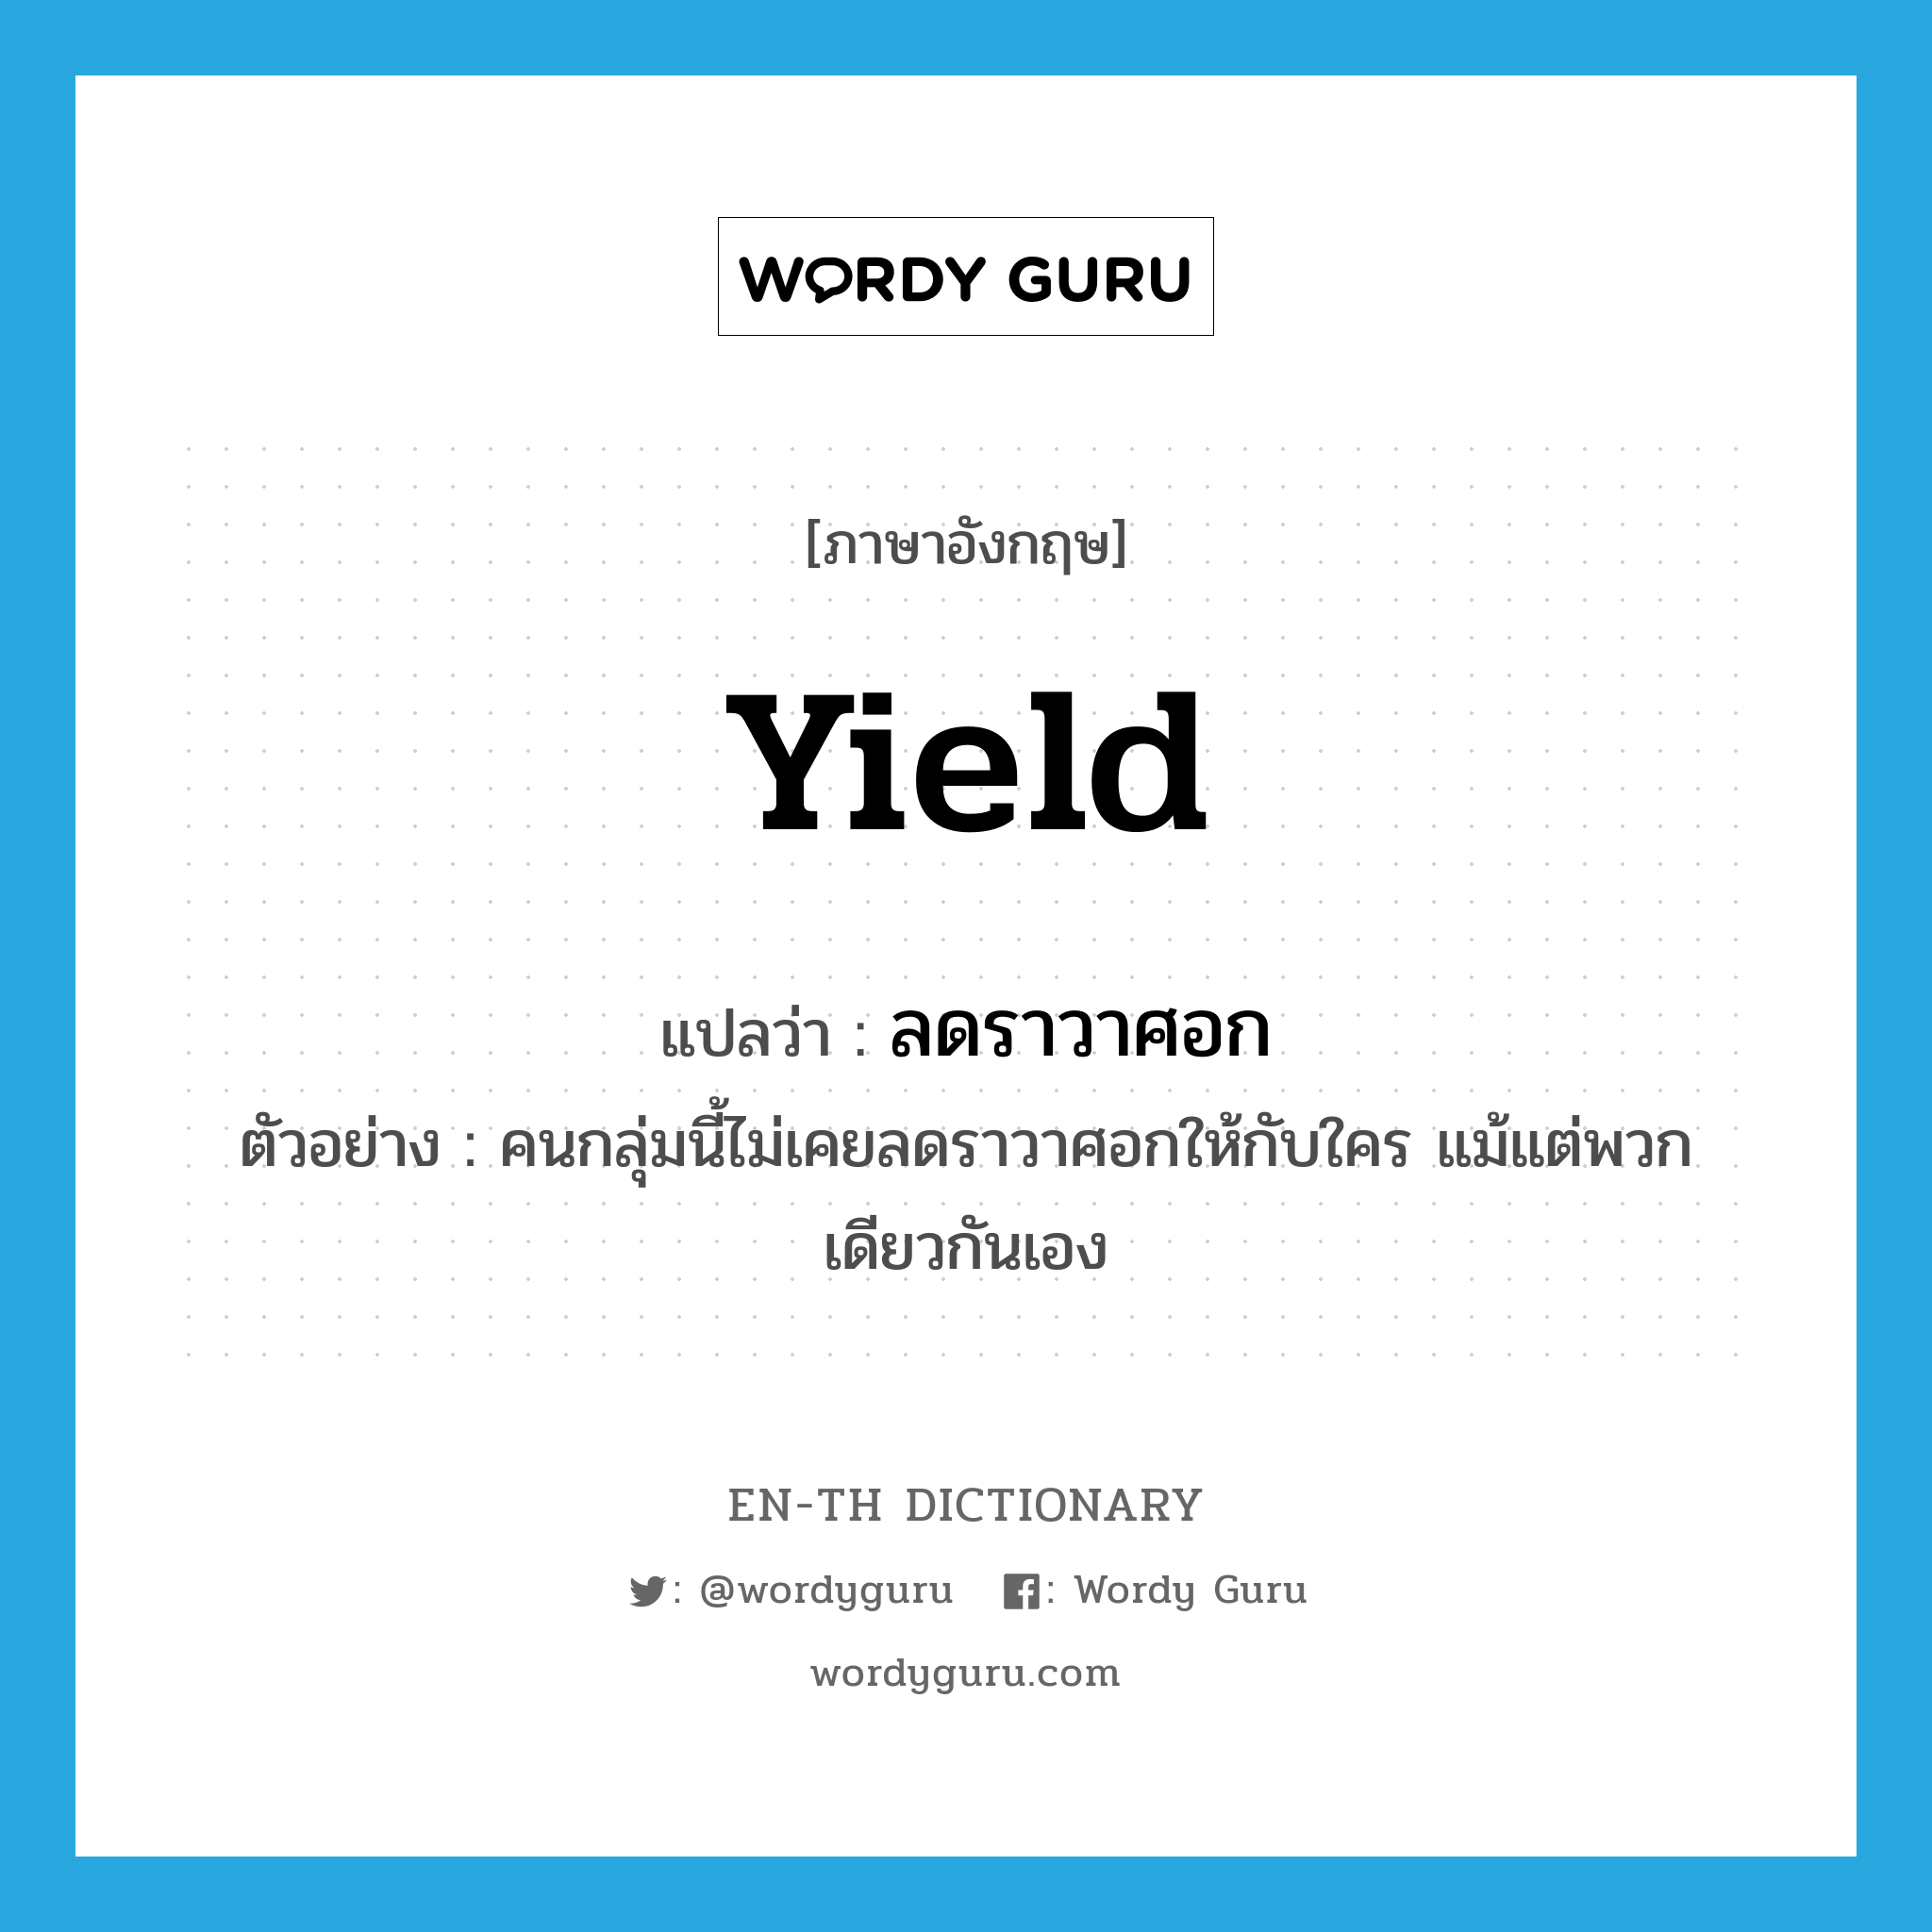 yield แปลว่า?, คำศัพท์ภาษาอังกฤษ yield แปลว่า ลดราวาศอก ประเภท V ตัวอย่าง คนกลุ่มนี้ไม่เคยลดราวาศอกให้กับใคร แม้แต่พวกเดียวกันเอง หมวด V